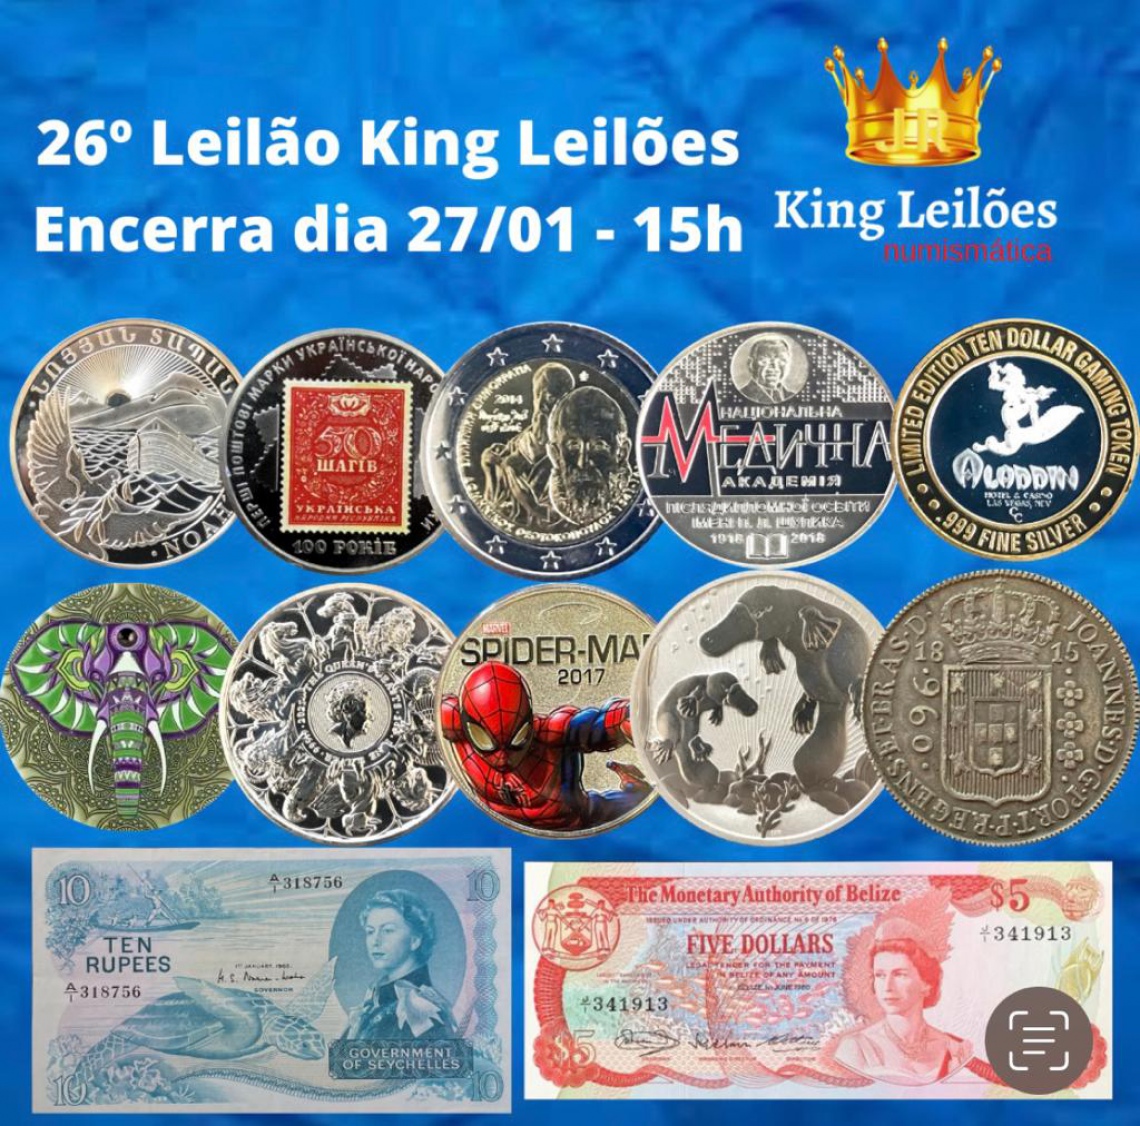 26º LEILÃO KING LEILÕES DE NUMISMÁTICA, MULTICOLECIONISMO E ANTIGUIDADES